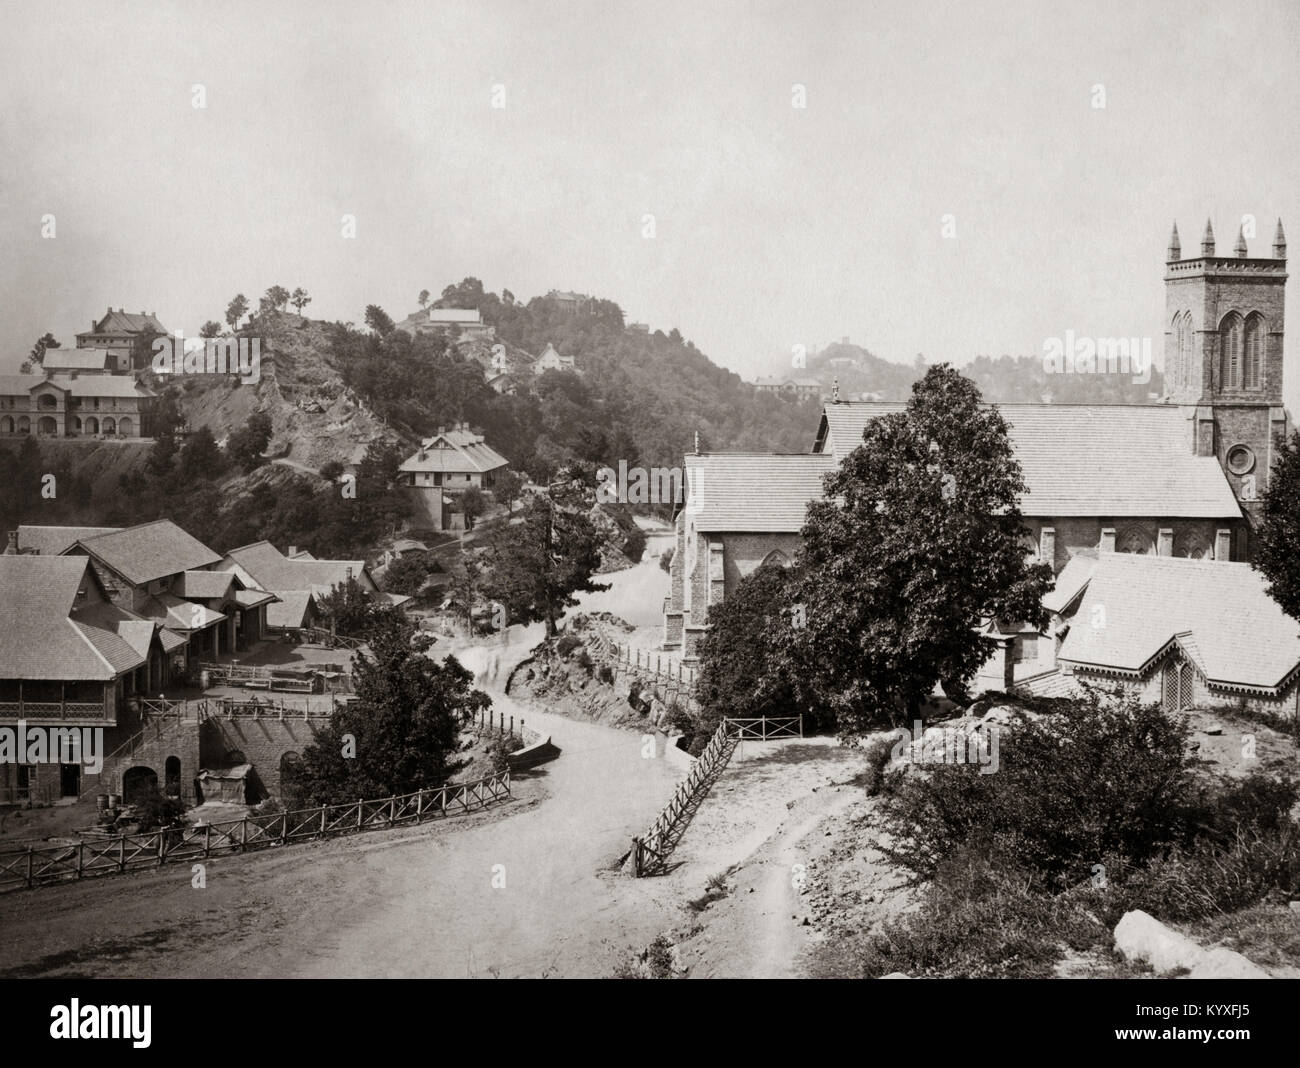 Murree, hill station, Punjab, India (Pakistan) c.1870 Stock Photo